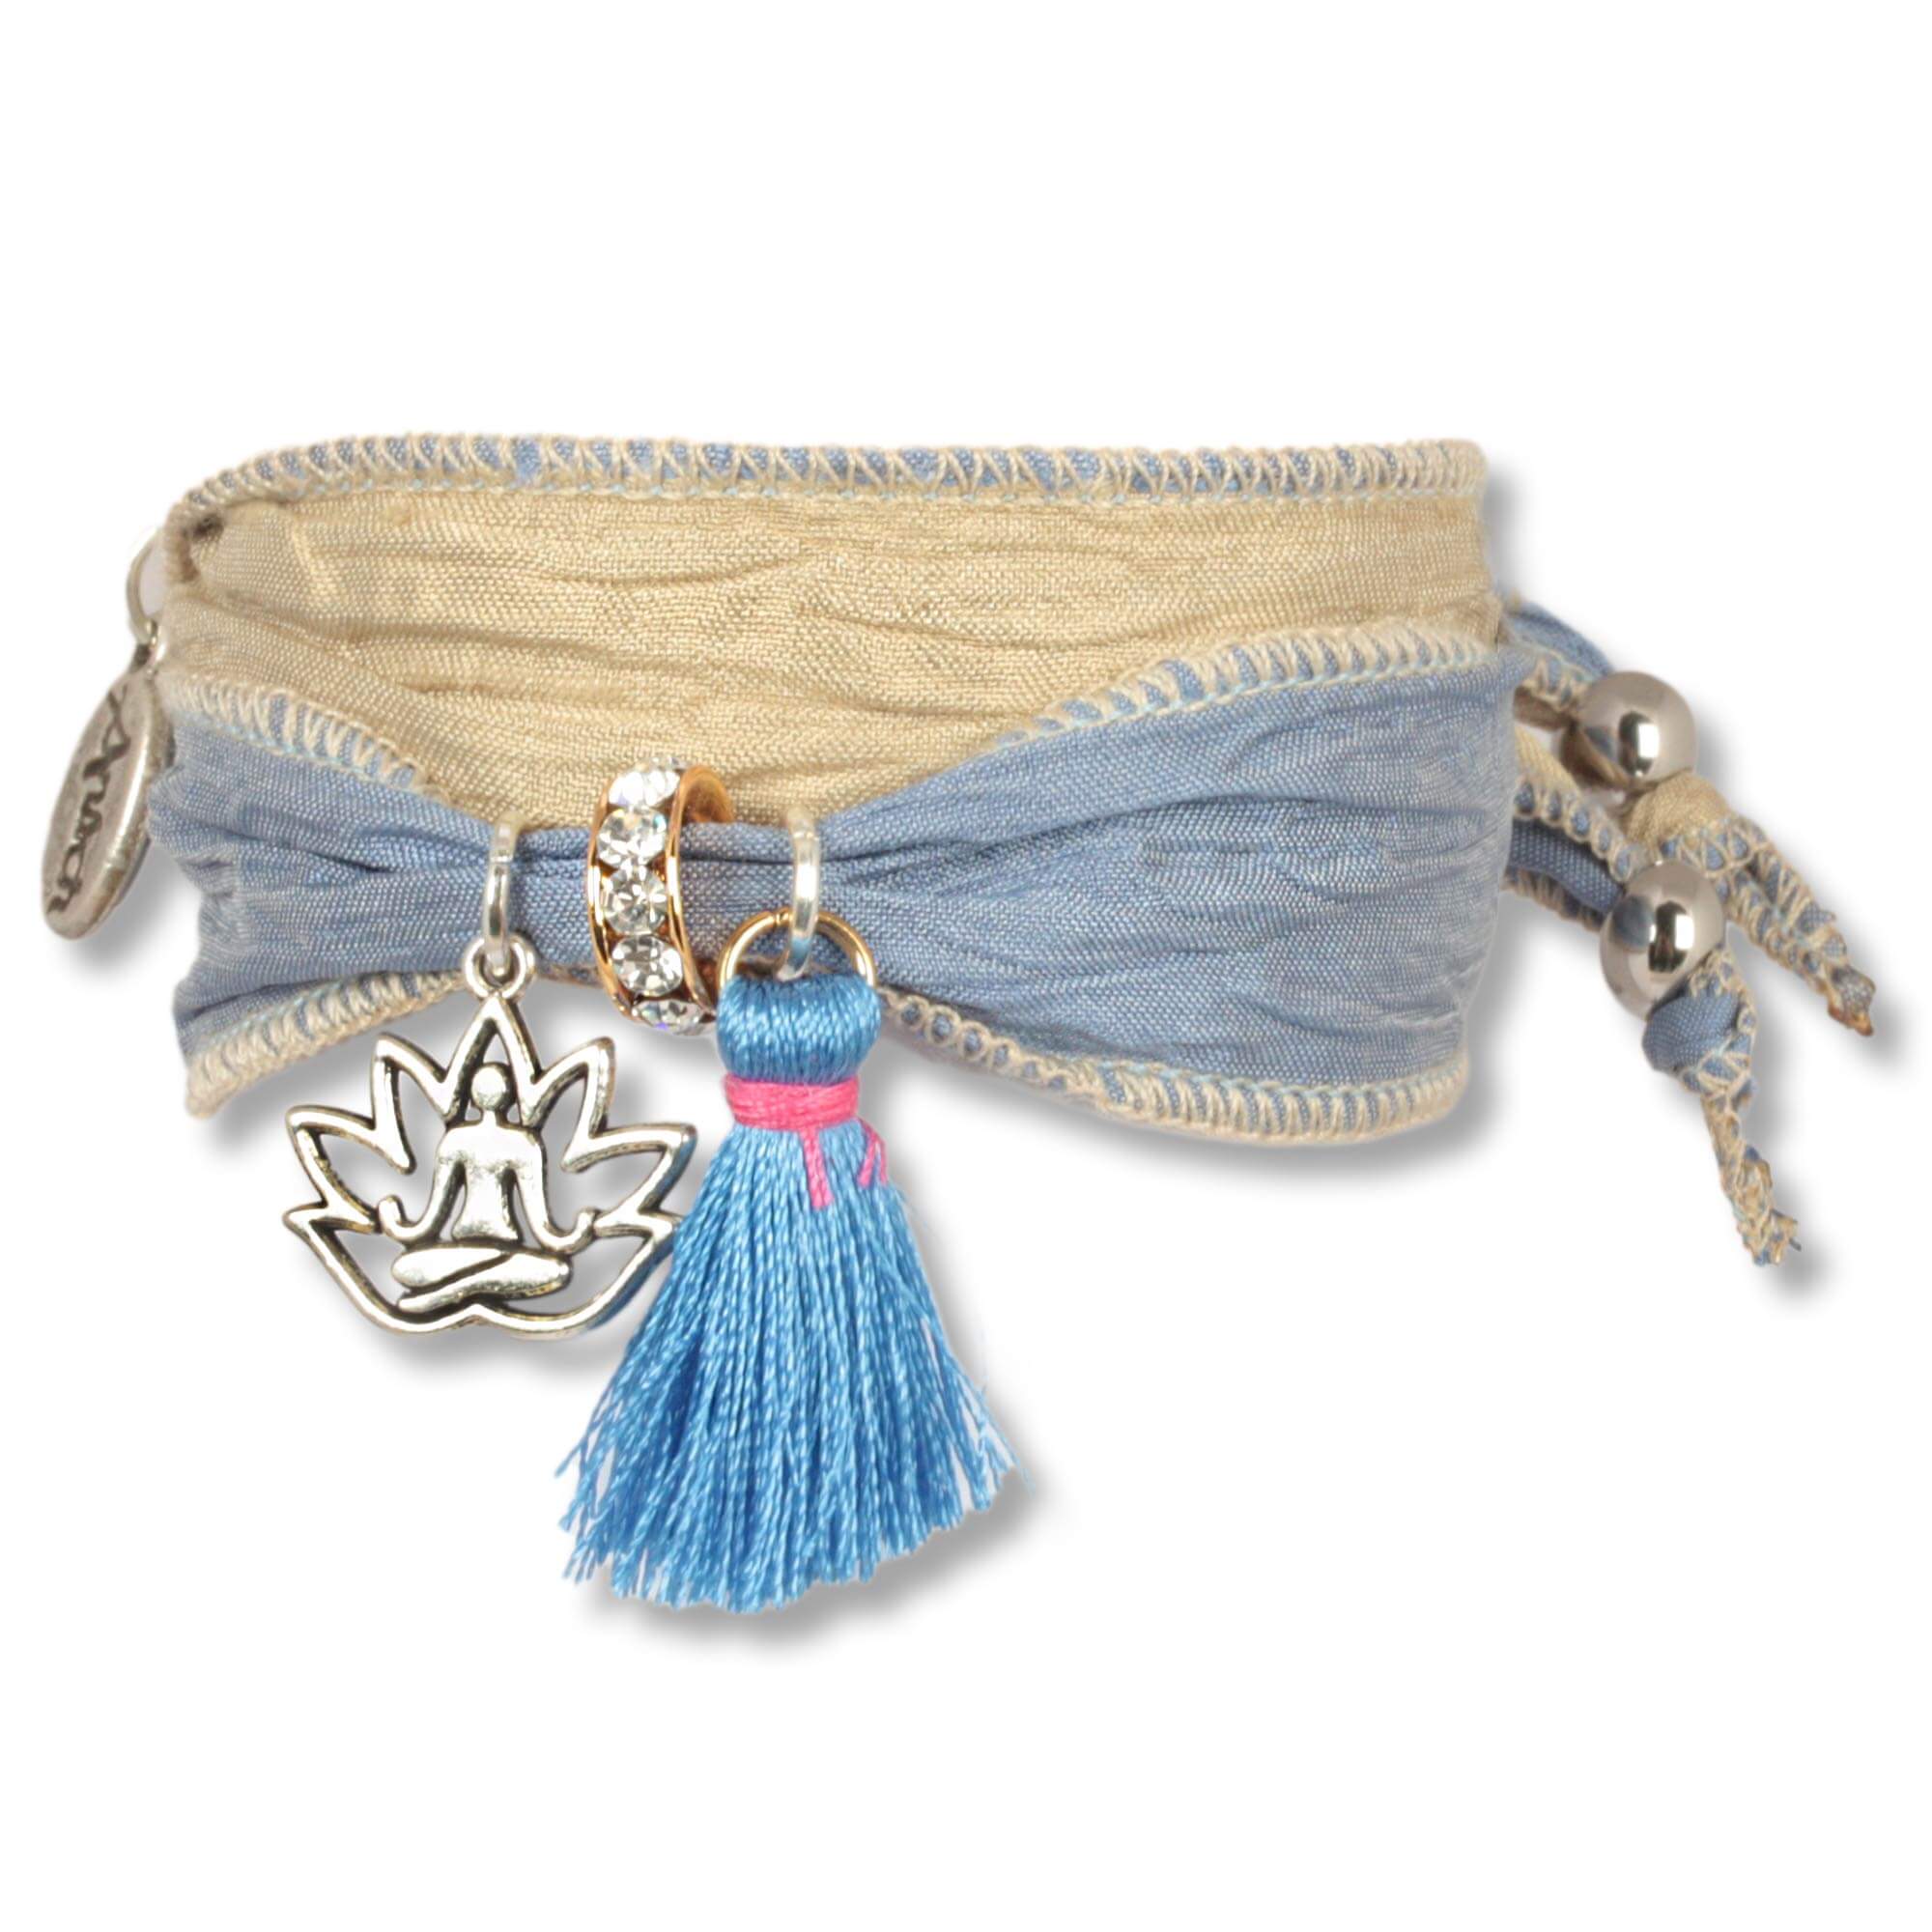 Handgefertigtes Stoffarmband aus Saris und Seidenstoffen in Blau, Naturfarben. Verziert mit einer metallenen Lotusblume, die einen meditierenden Buddha zeigt, einer blauen Seidenquaste, einem Rondell besetzt mit tschechischen Kristallen. Hersteller: Anisc